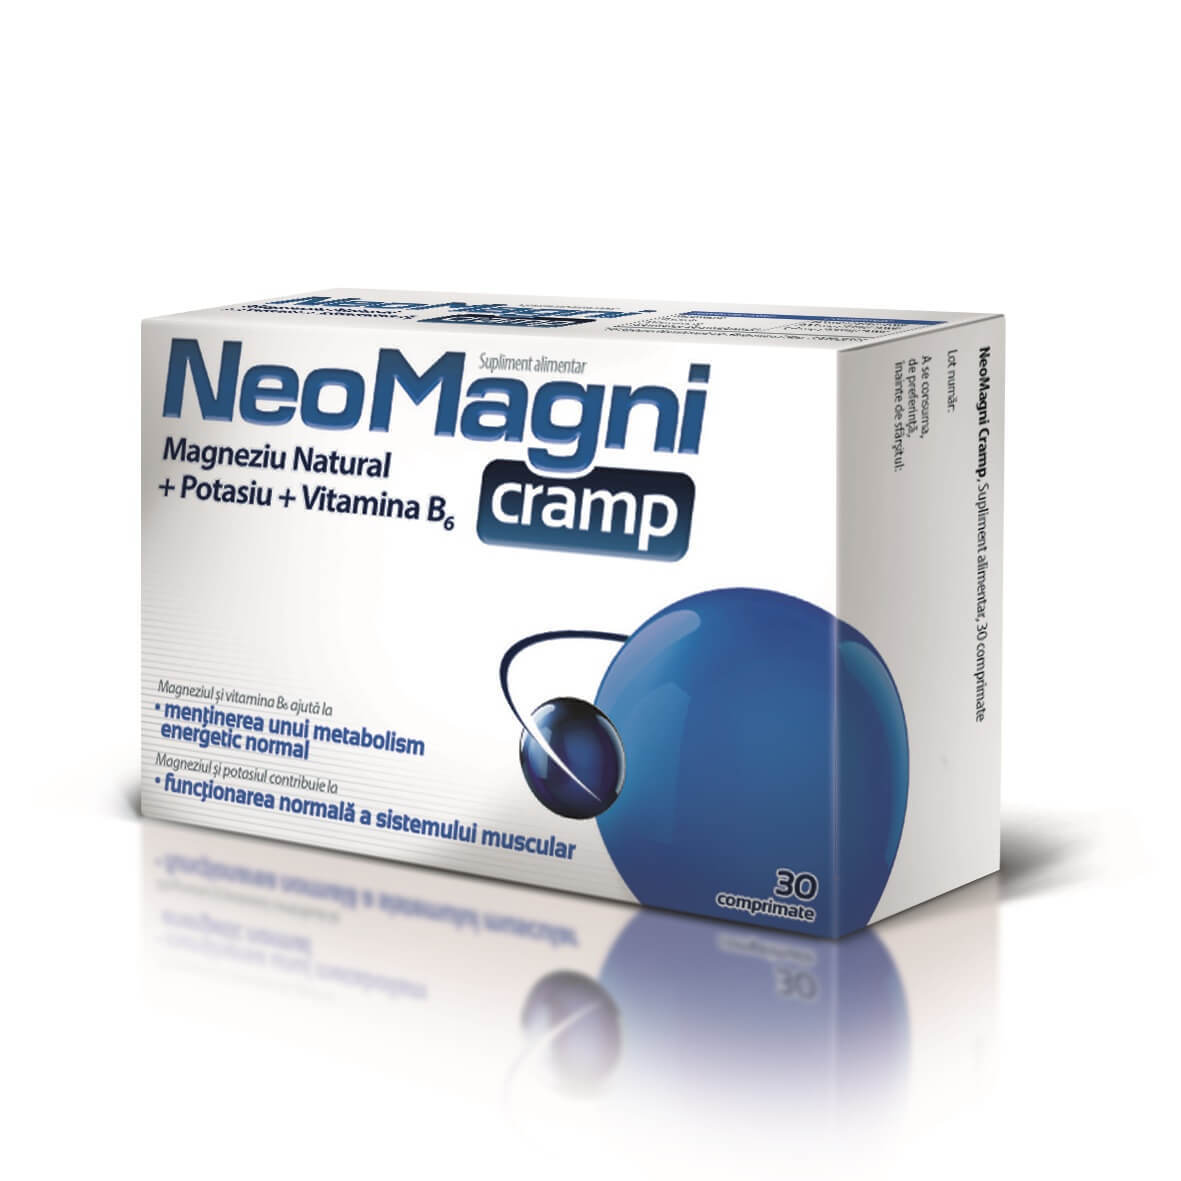 NeoMagni cramp, 30 comprimate, Aflofarm Vitamine si suplimente